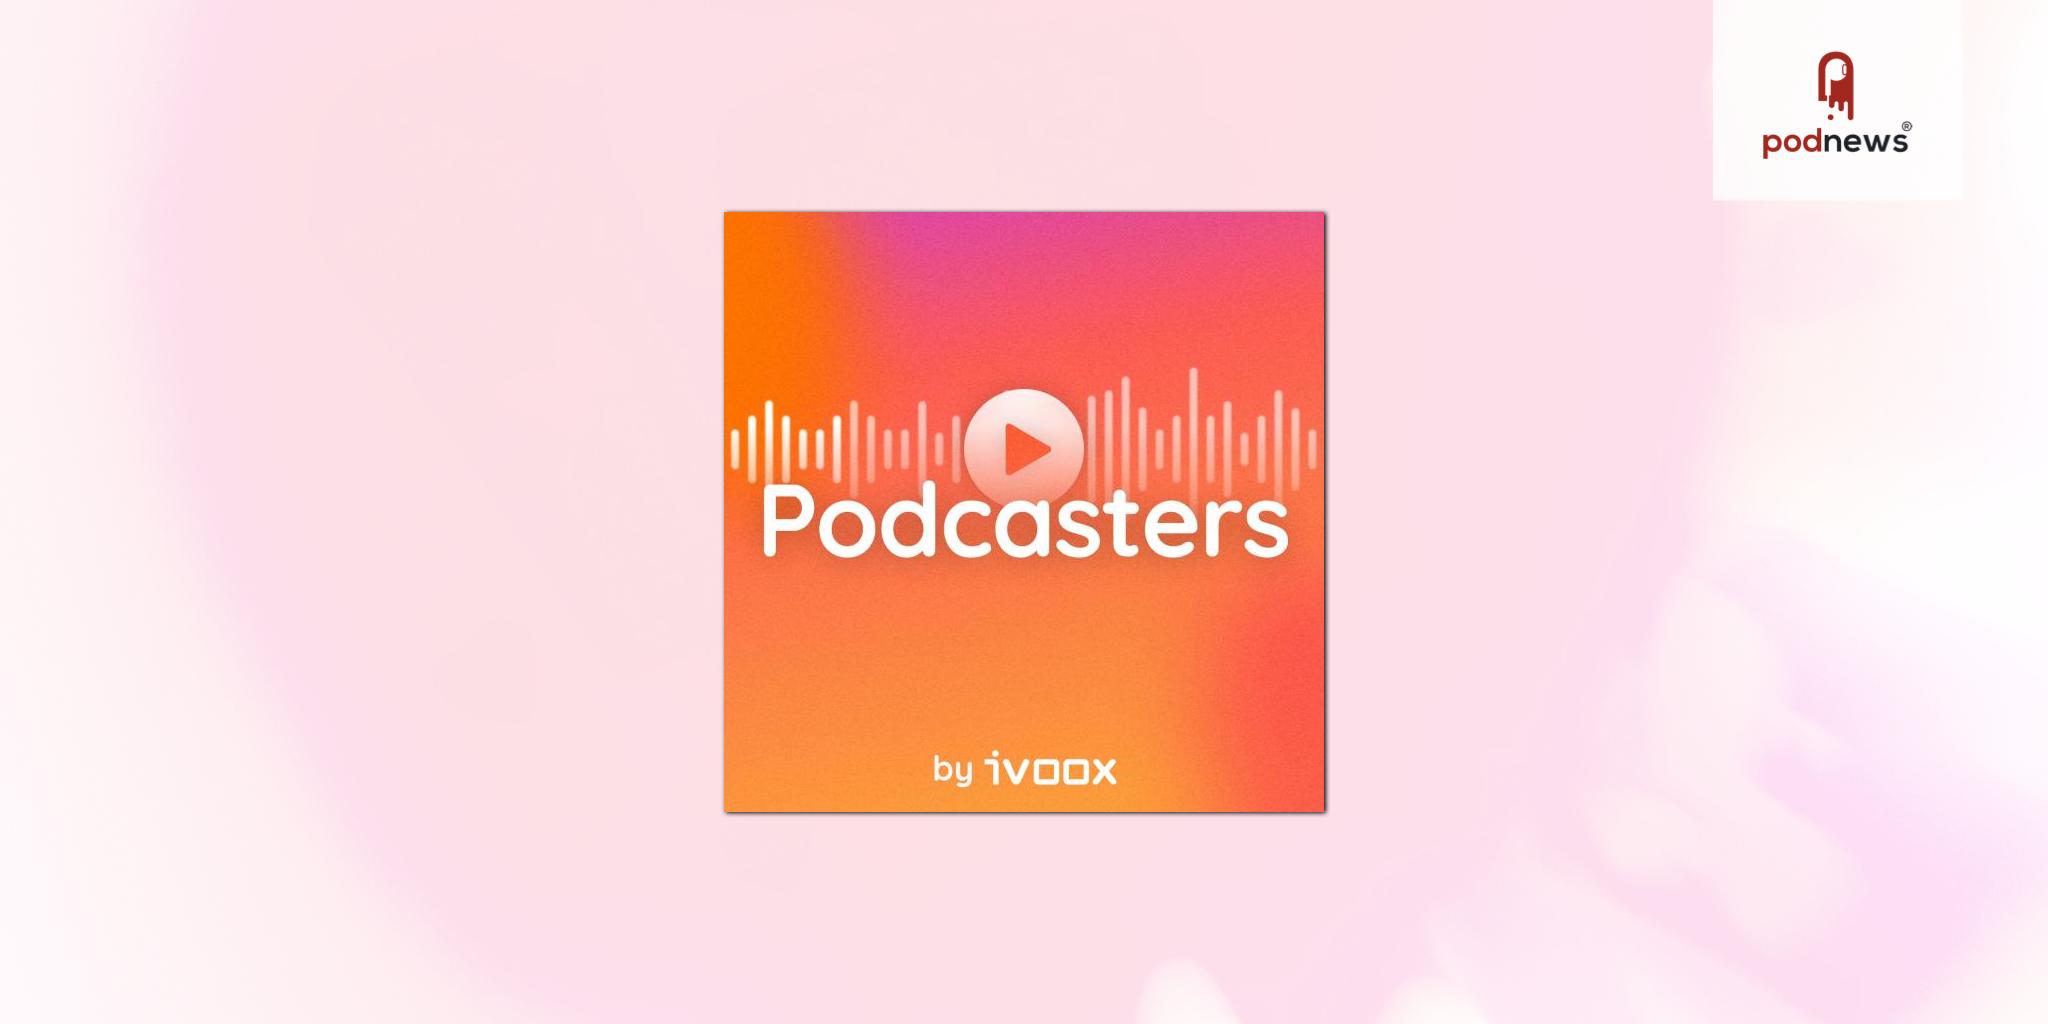 iVoox lanza 'Podcasters', un podcast hecho por y para creadores de contenido